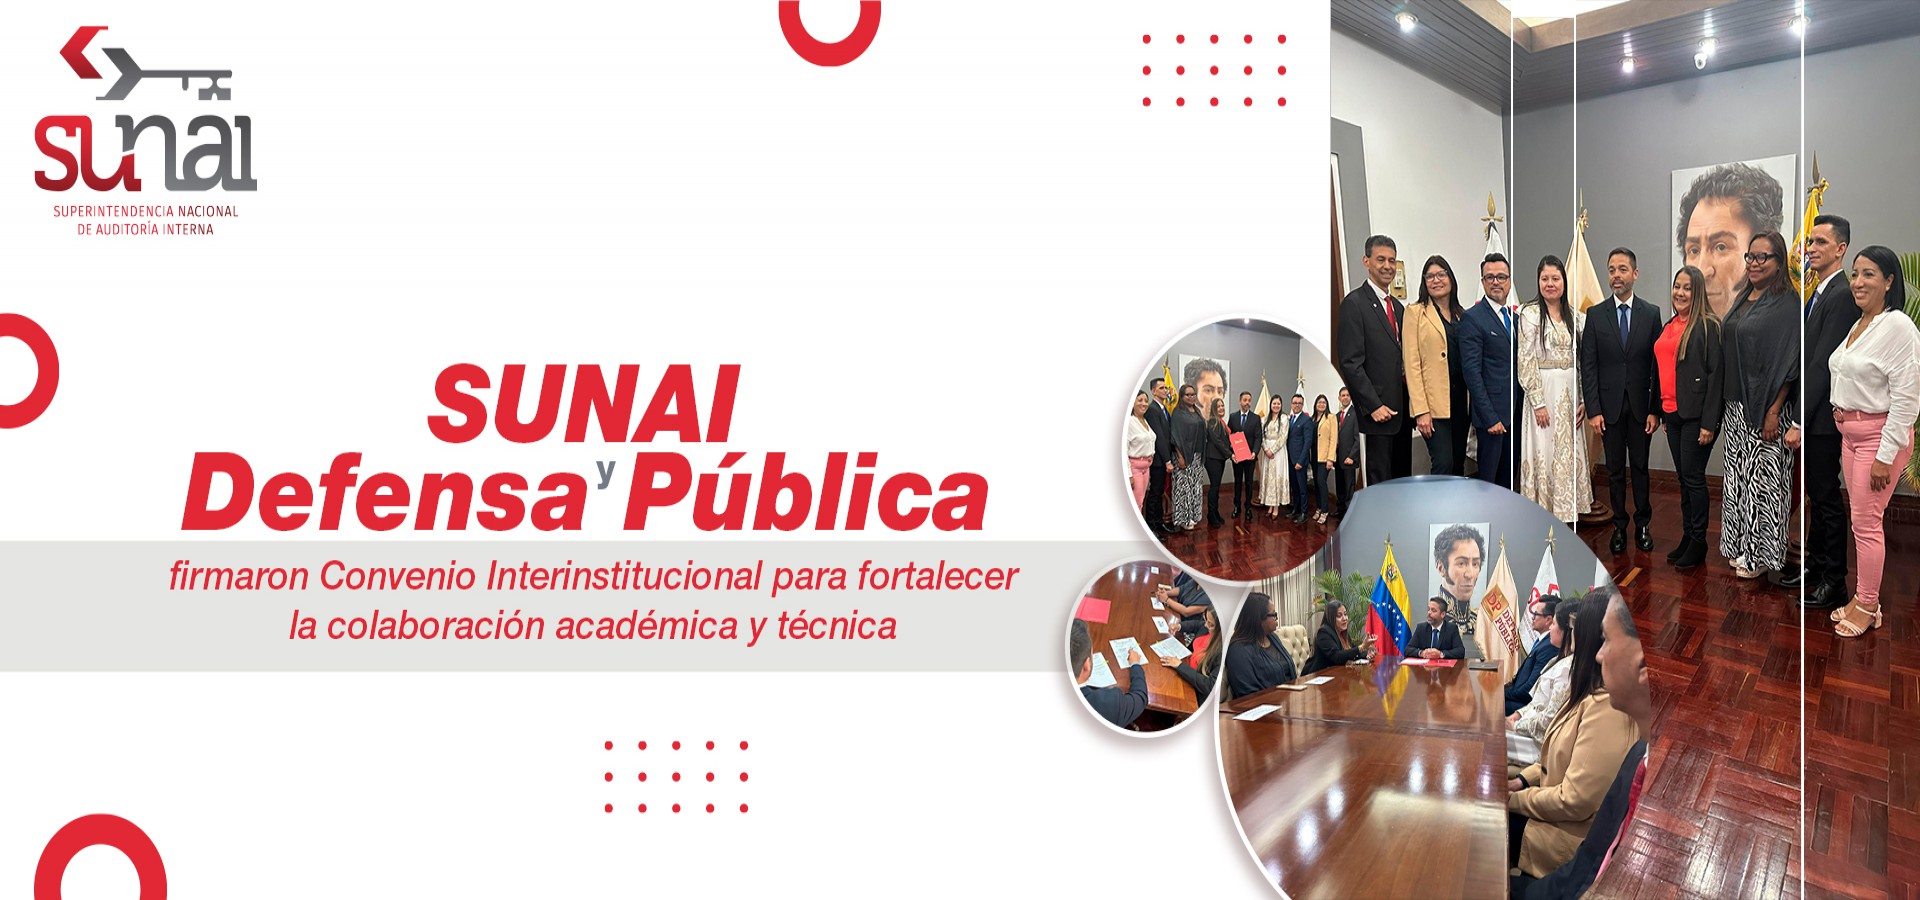 SUNAI y la Defensa Pública firman convenio interinstitucional para fortalecer la colaboración académica y técnica